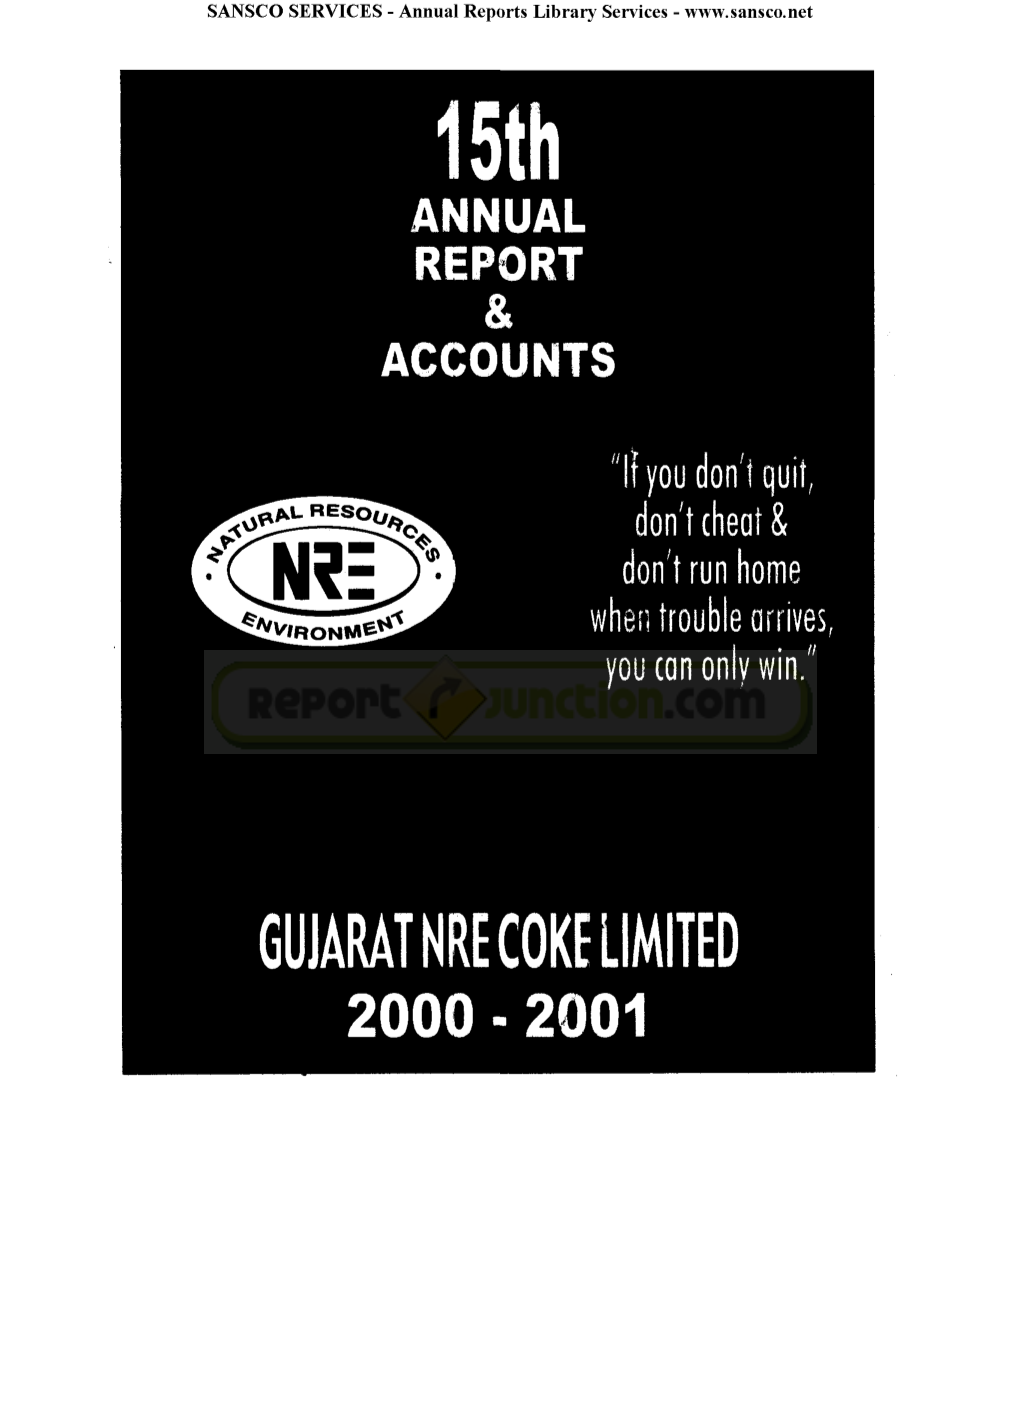 Gujarat Nre Coke Limited 2000 - 2001